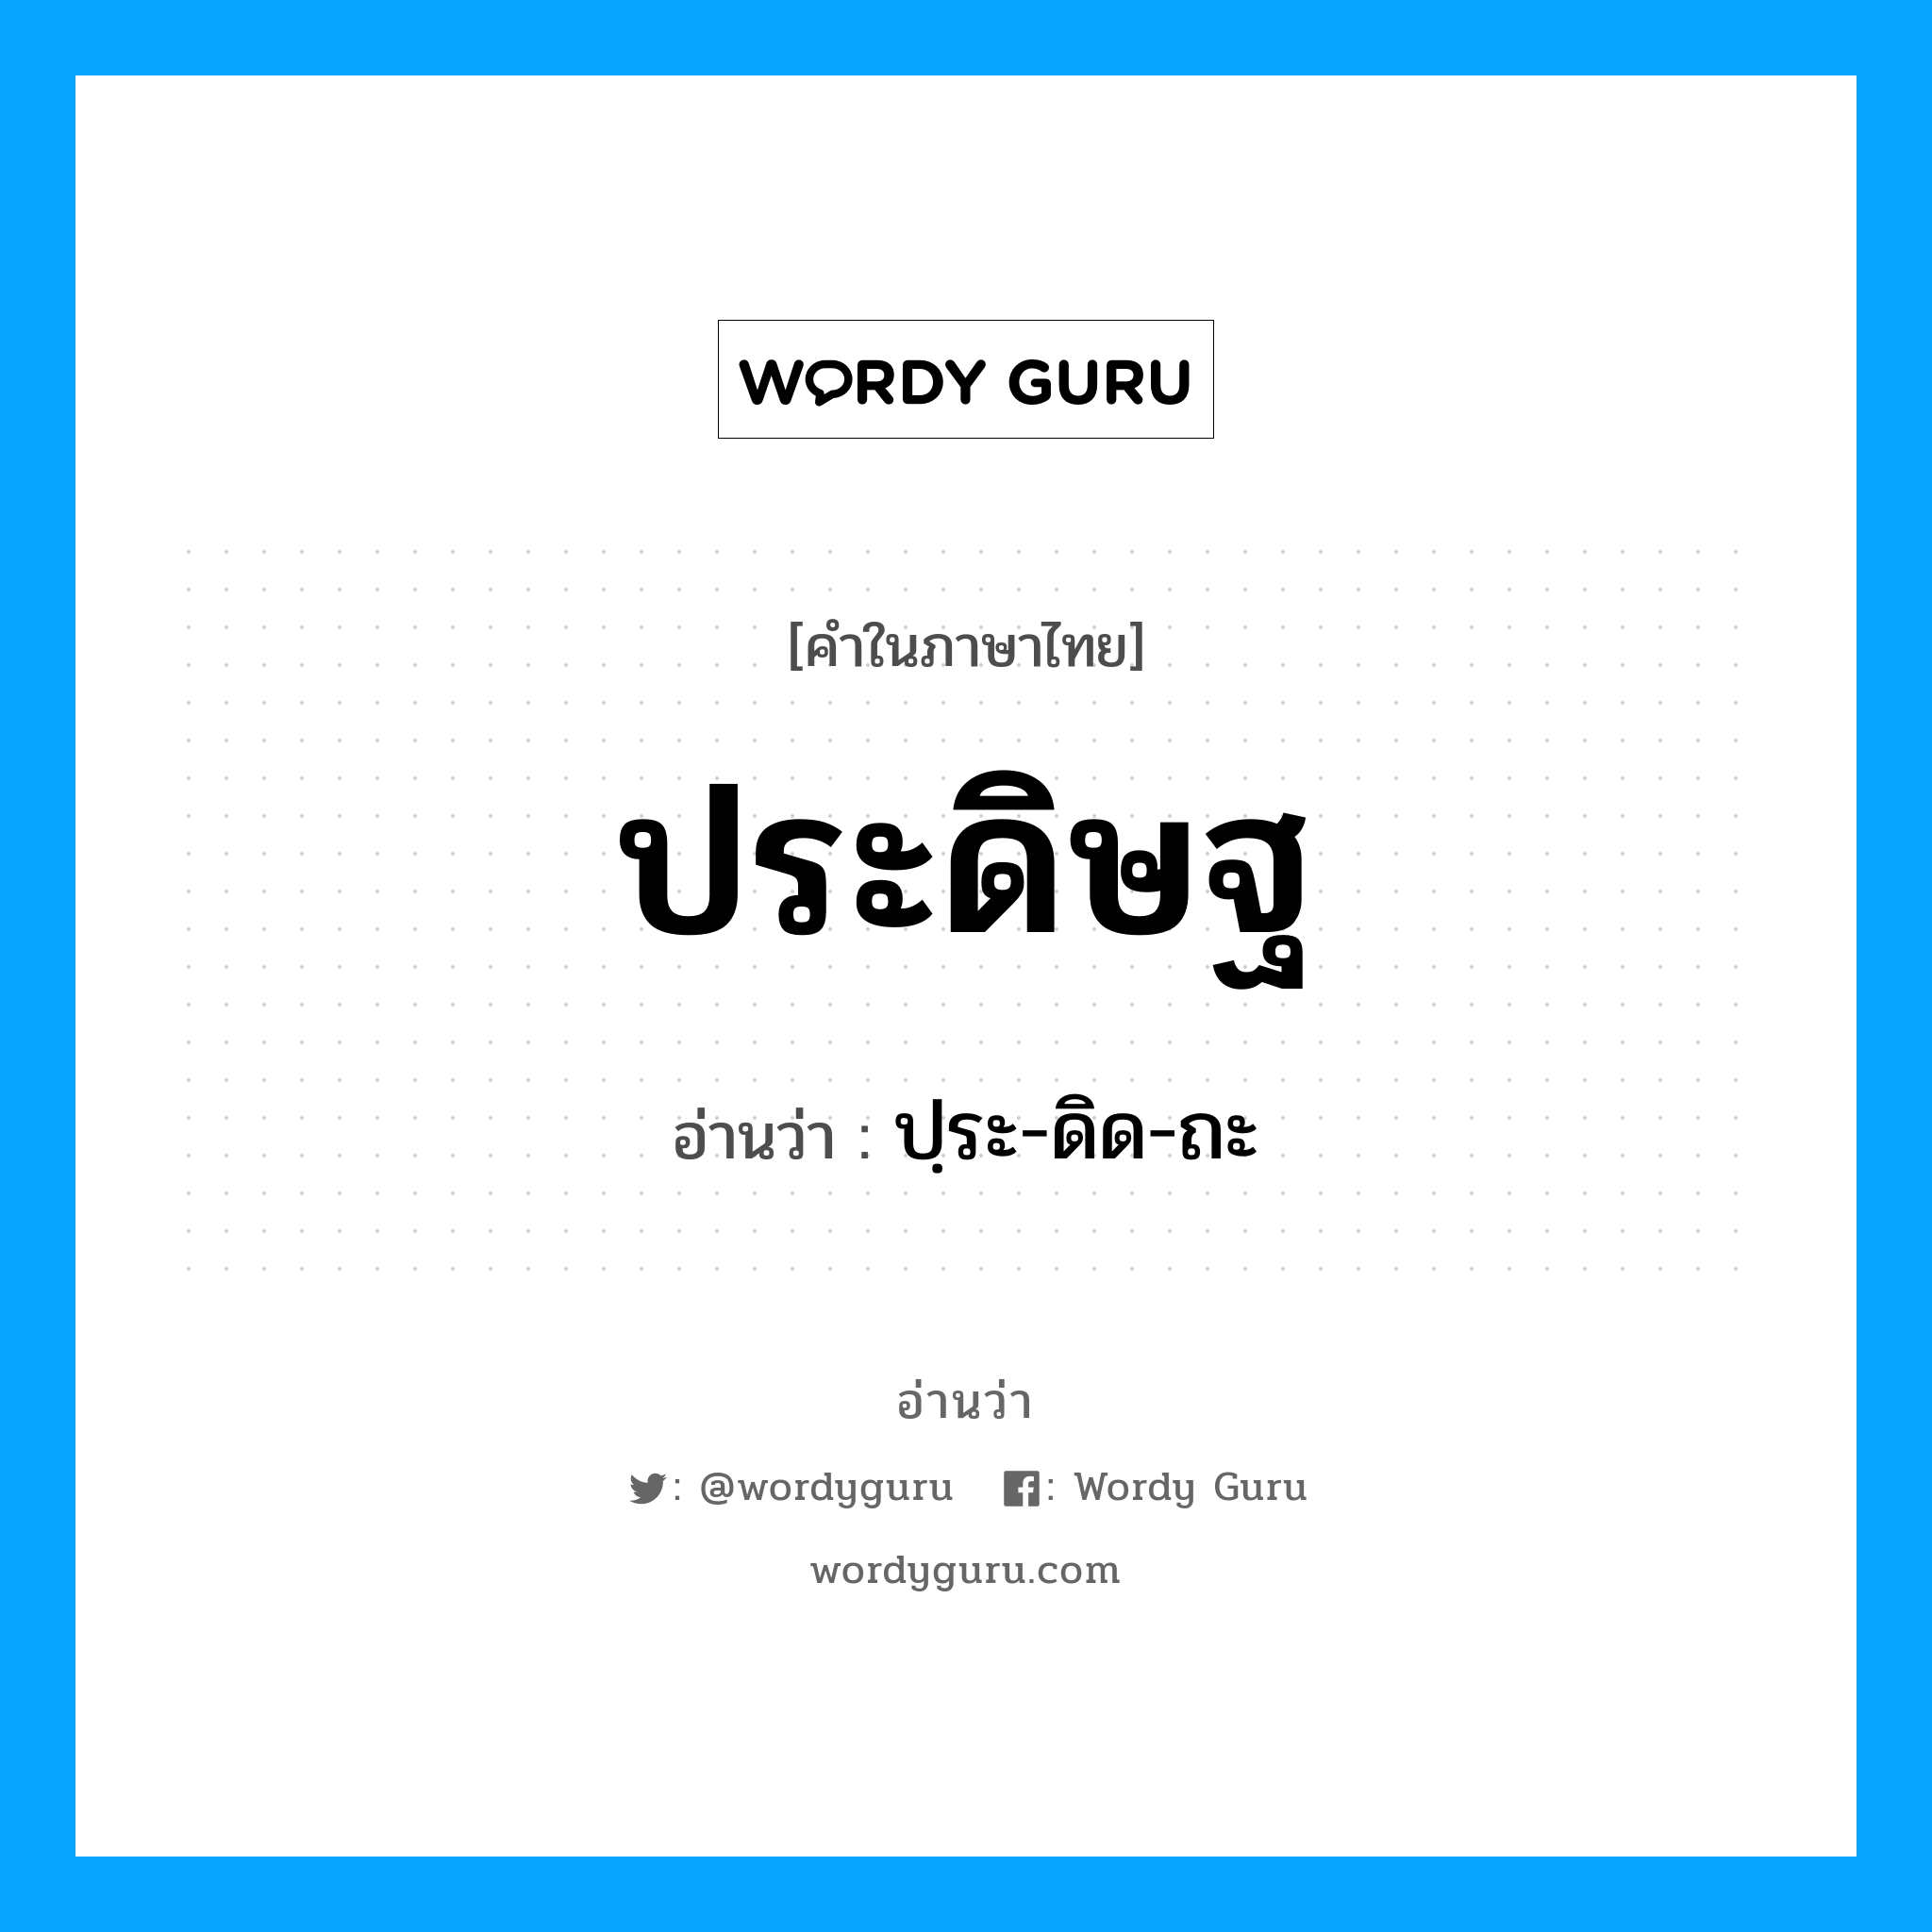 ปฺระ-ดิด-ถะ เป็นคำอ่านของคำไหน?, คำในภาษาไทย ปฺระ-ดิด-ถะ อ่านว่า ประดิษฐ